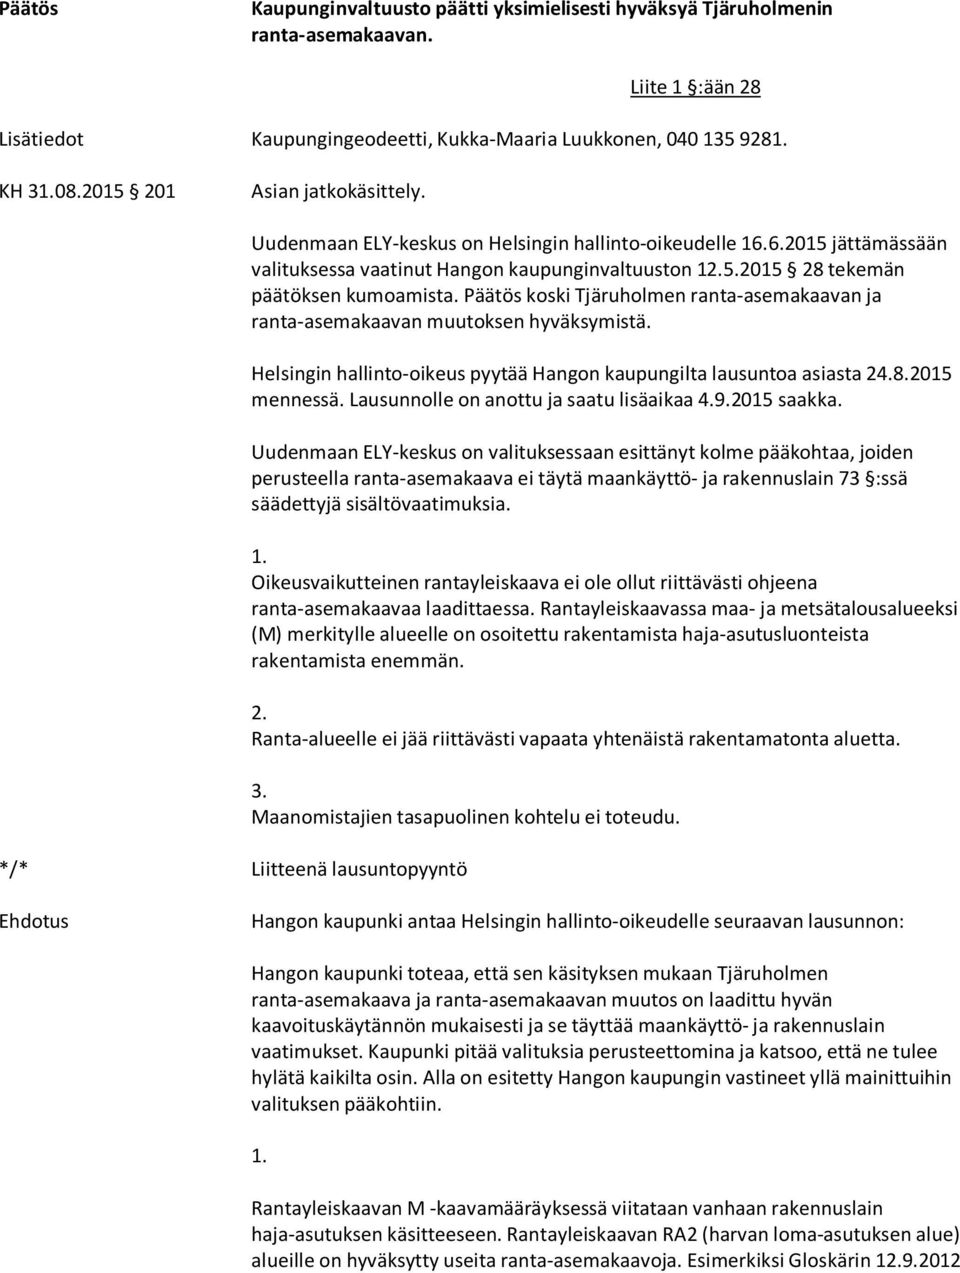 koski Tjäruholmen ranta-asemakaavan ja ranta-asemakaavan muutoksen hyväksymistä. Helsingin hallinto-oikeus pyytää Hangon kaupungilta lausuntoa asiasta 24.8.2015 mennessä.